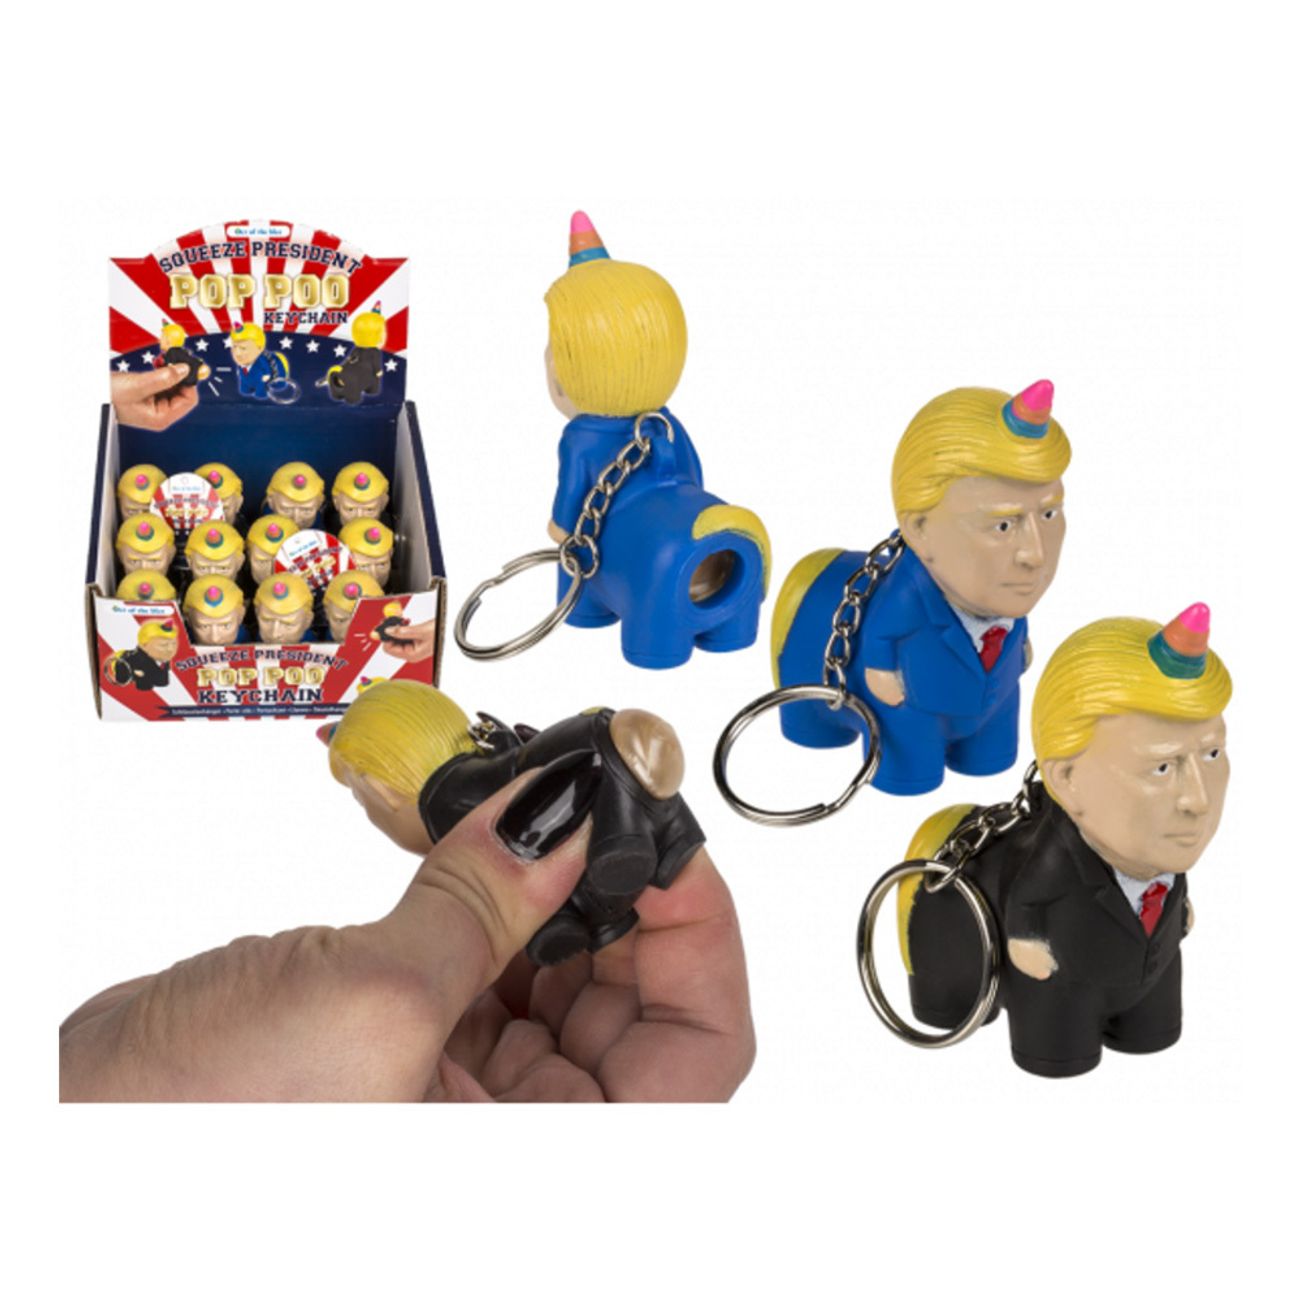 president-squeeze-guldbajs-nyckelring-1